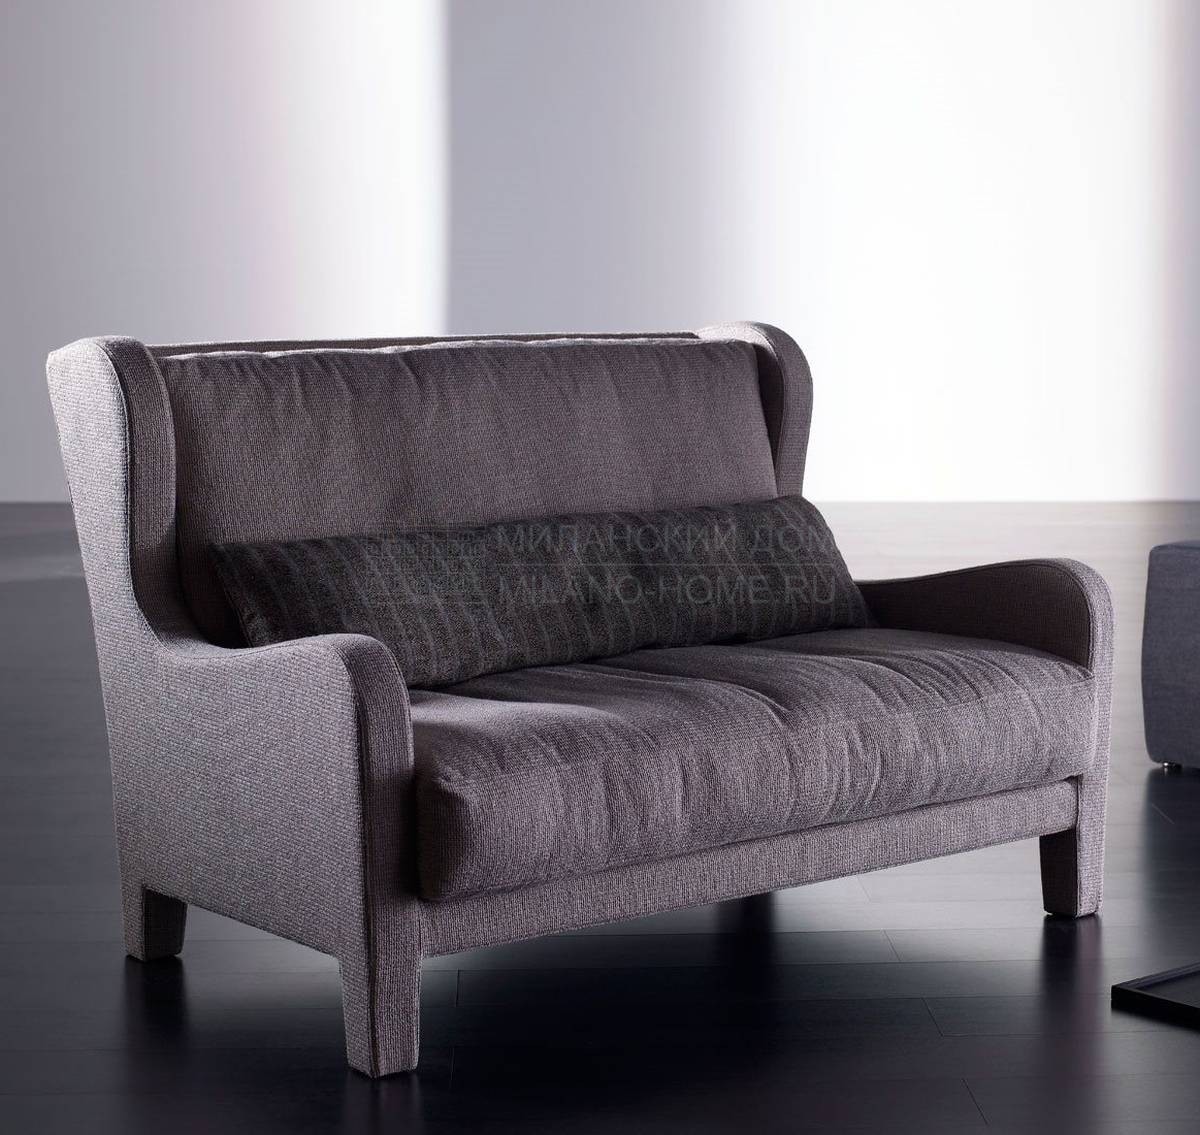 Прямой диван Forrest Soft из Италии фабрики MERIDIANI